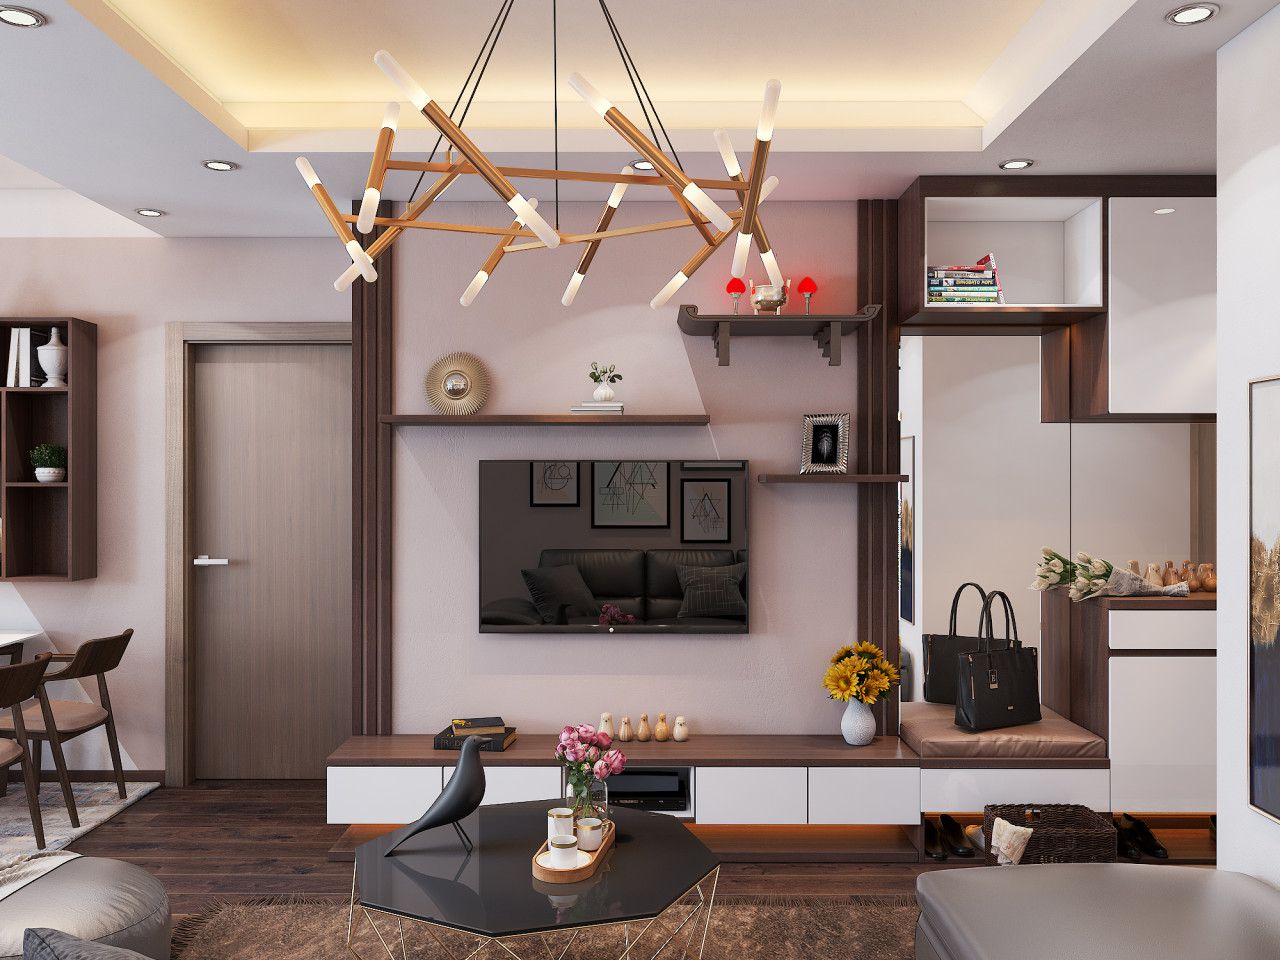 Thiết kế nội thất chung cư hiện đại đẹp mắt - Noithatlavender.vn